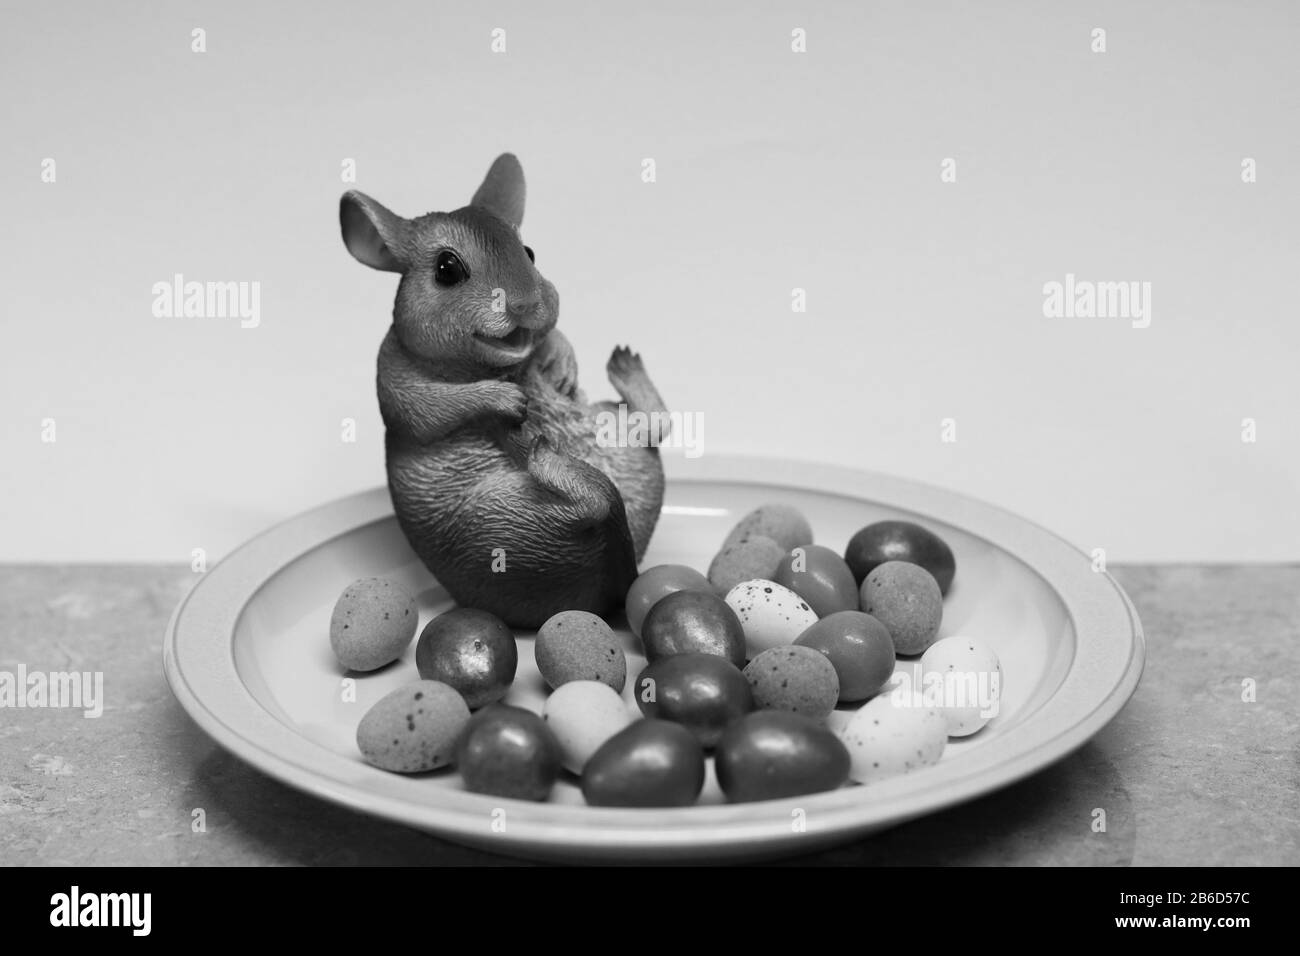 Jolly-Maus und ein Teller mit schokoladen-ostereiern. 09/03/2020. Droitwich, worcester, england, Großbritannien. Jolly Mouse saß auf einem Teller mit schokoladen-ostereiern. Stockfoto